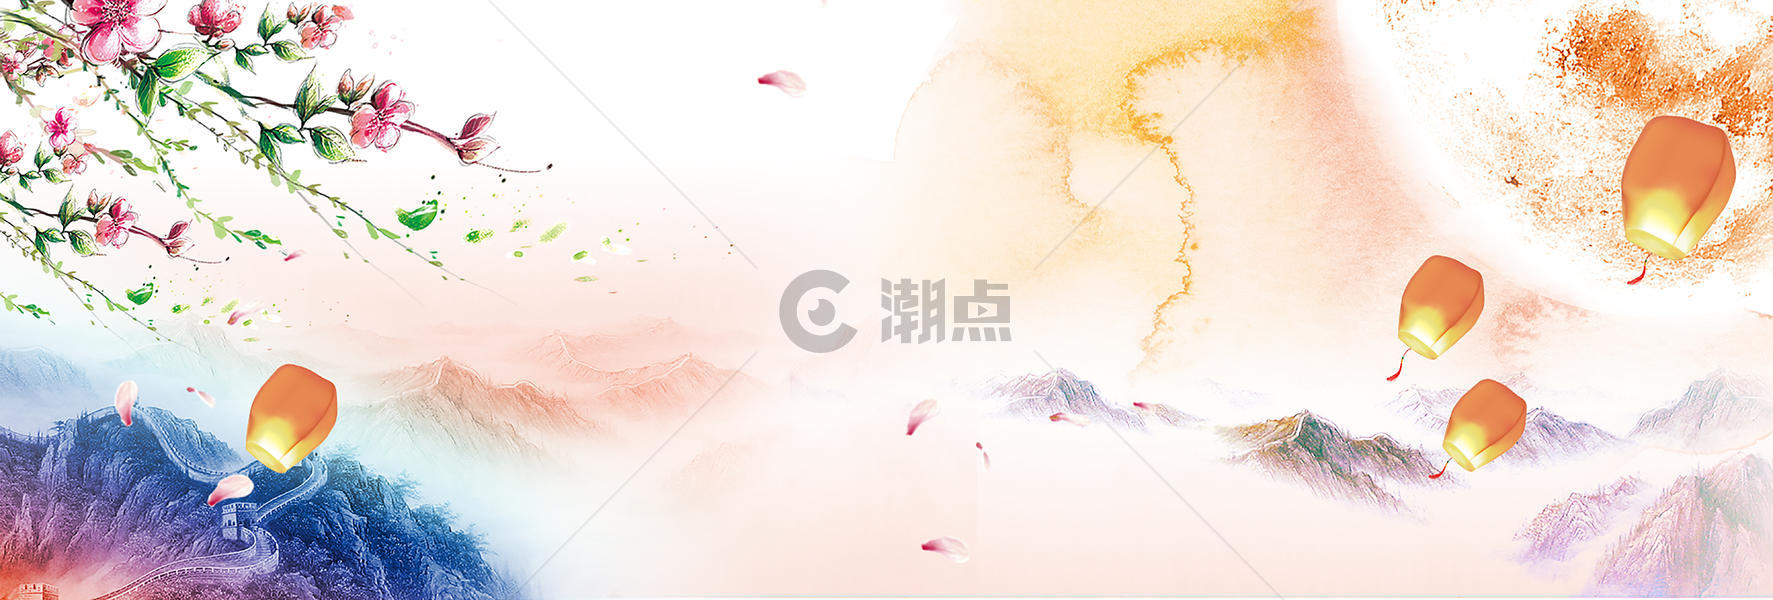 中秋节背景图片素材免费下载